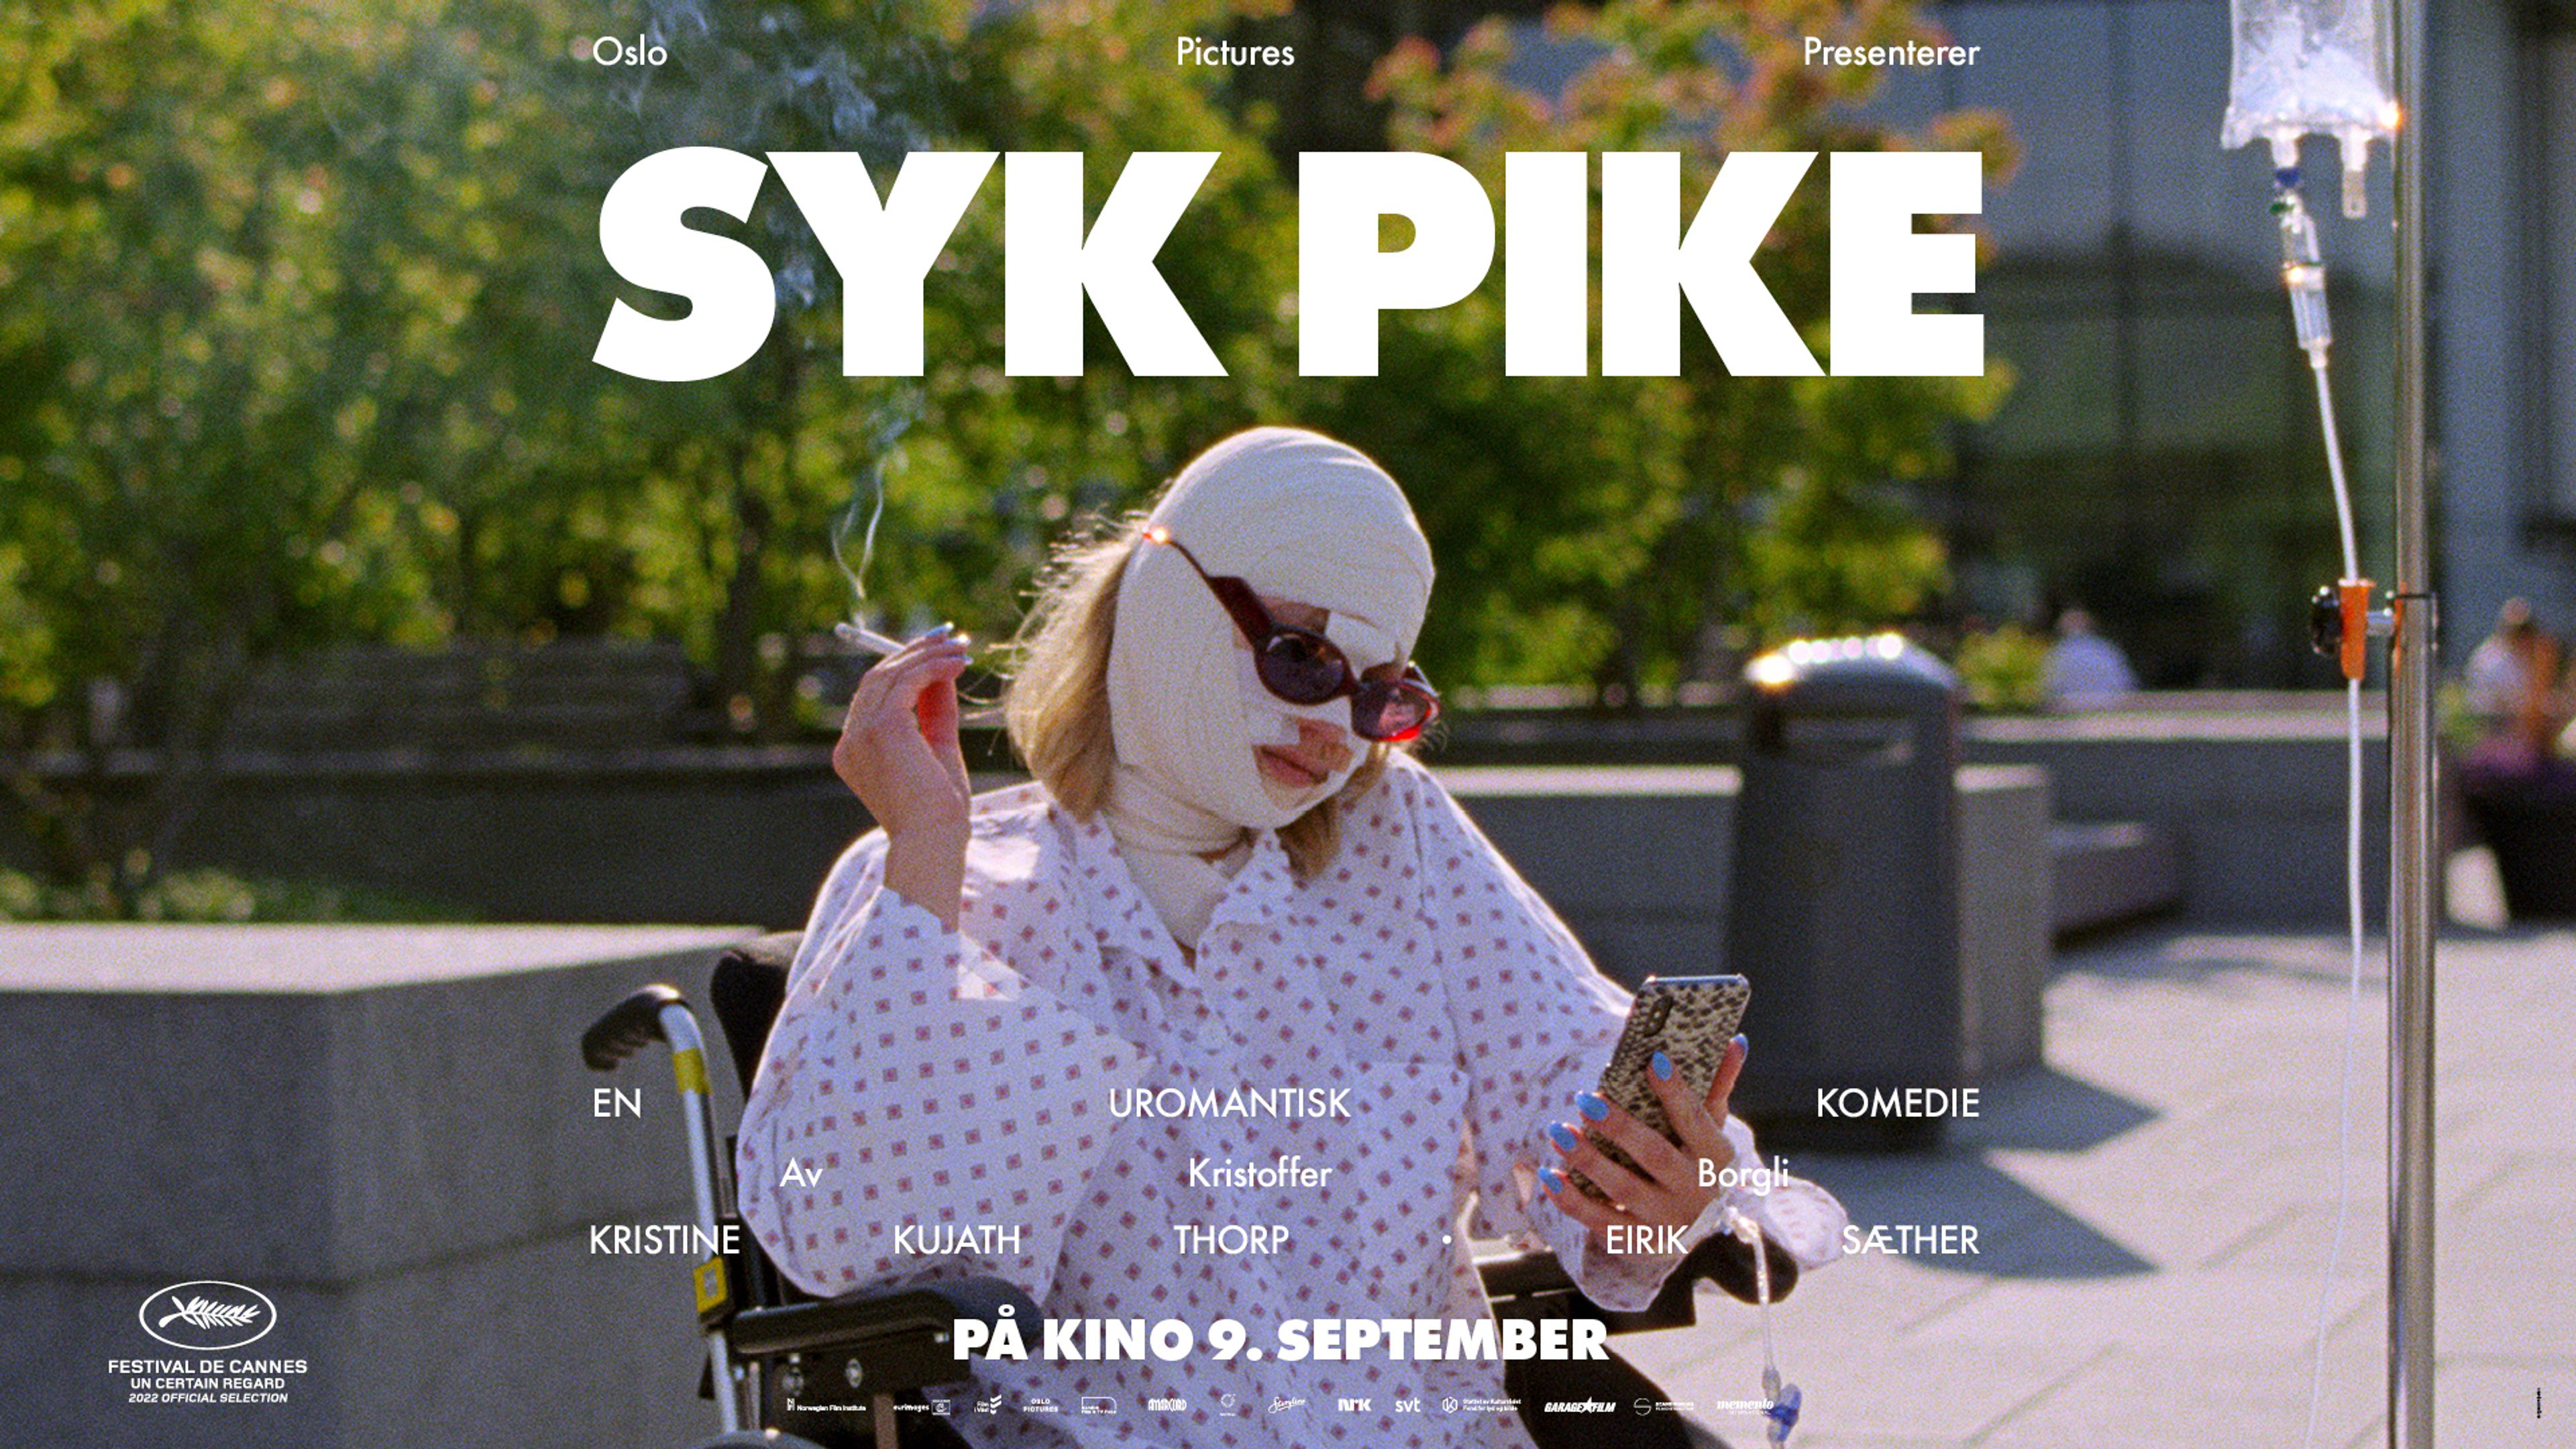 Syk Pike